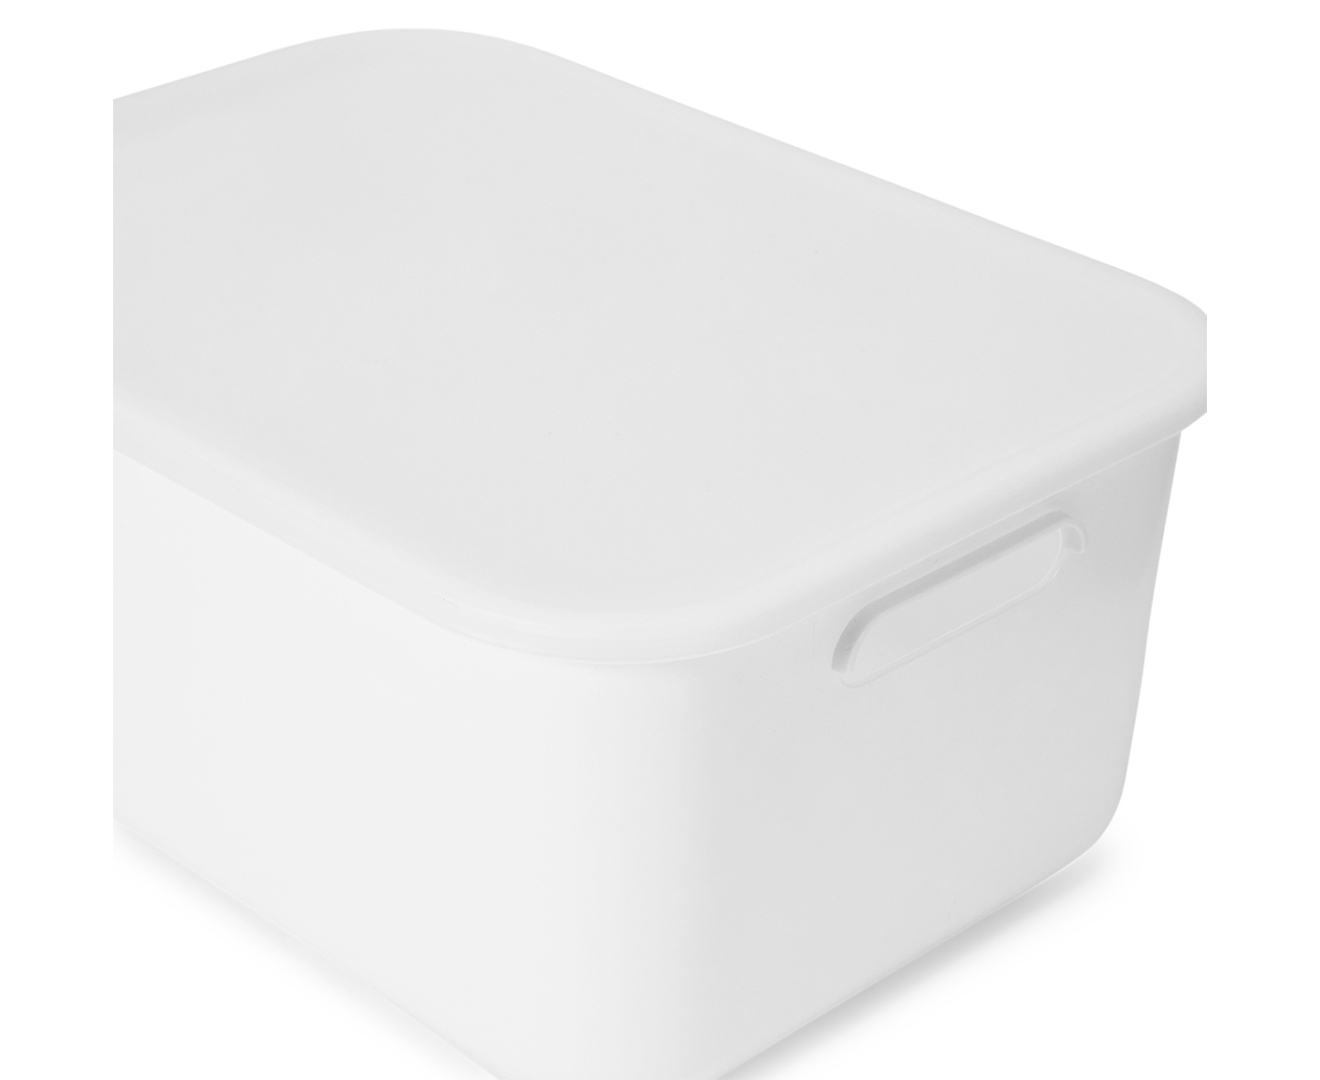 Anko by Kmart Small Plastic Storage Box w/ Lid - White | Catch.com.au